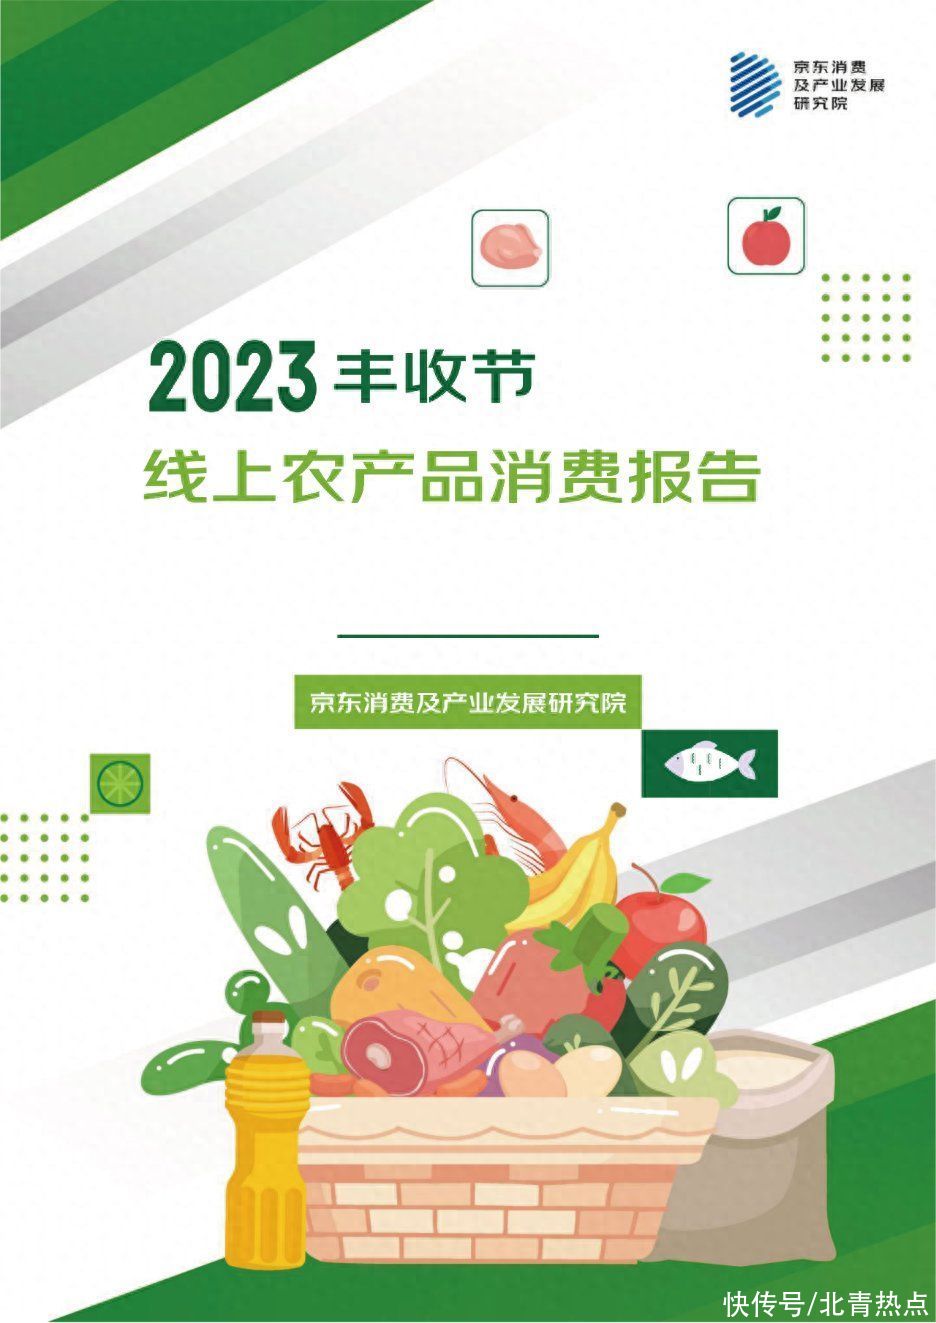 京东超市解码粮油、肉类、水产、果蔬四大类农产品线上消费趋势 一年为农户和企业节约10亿